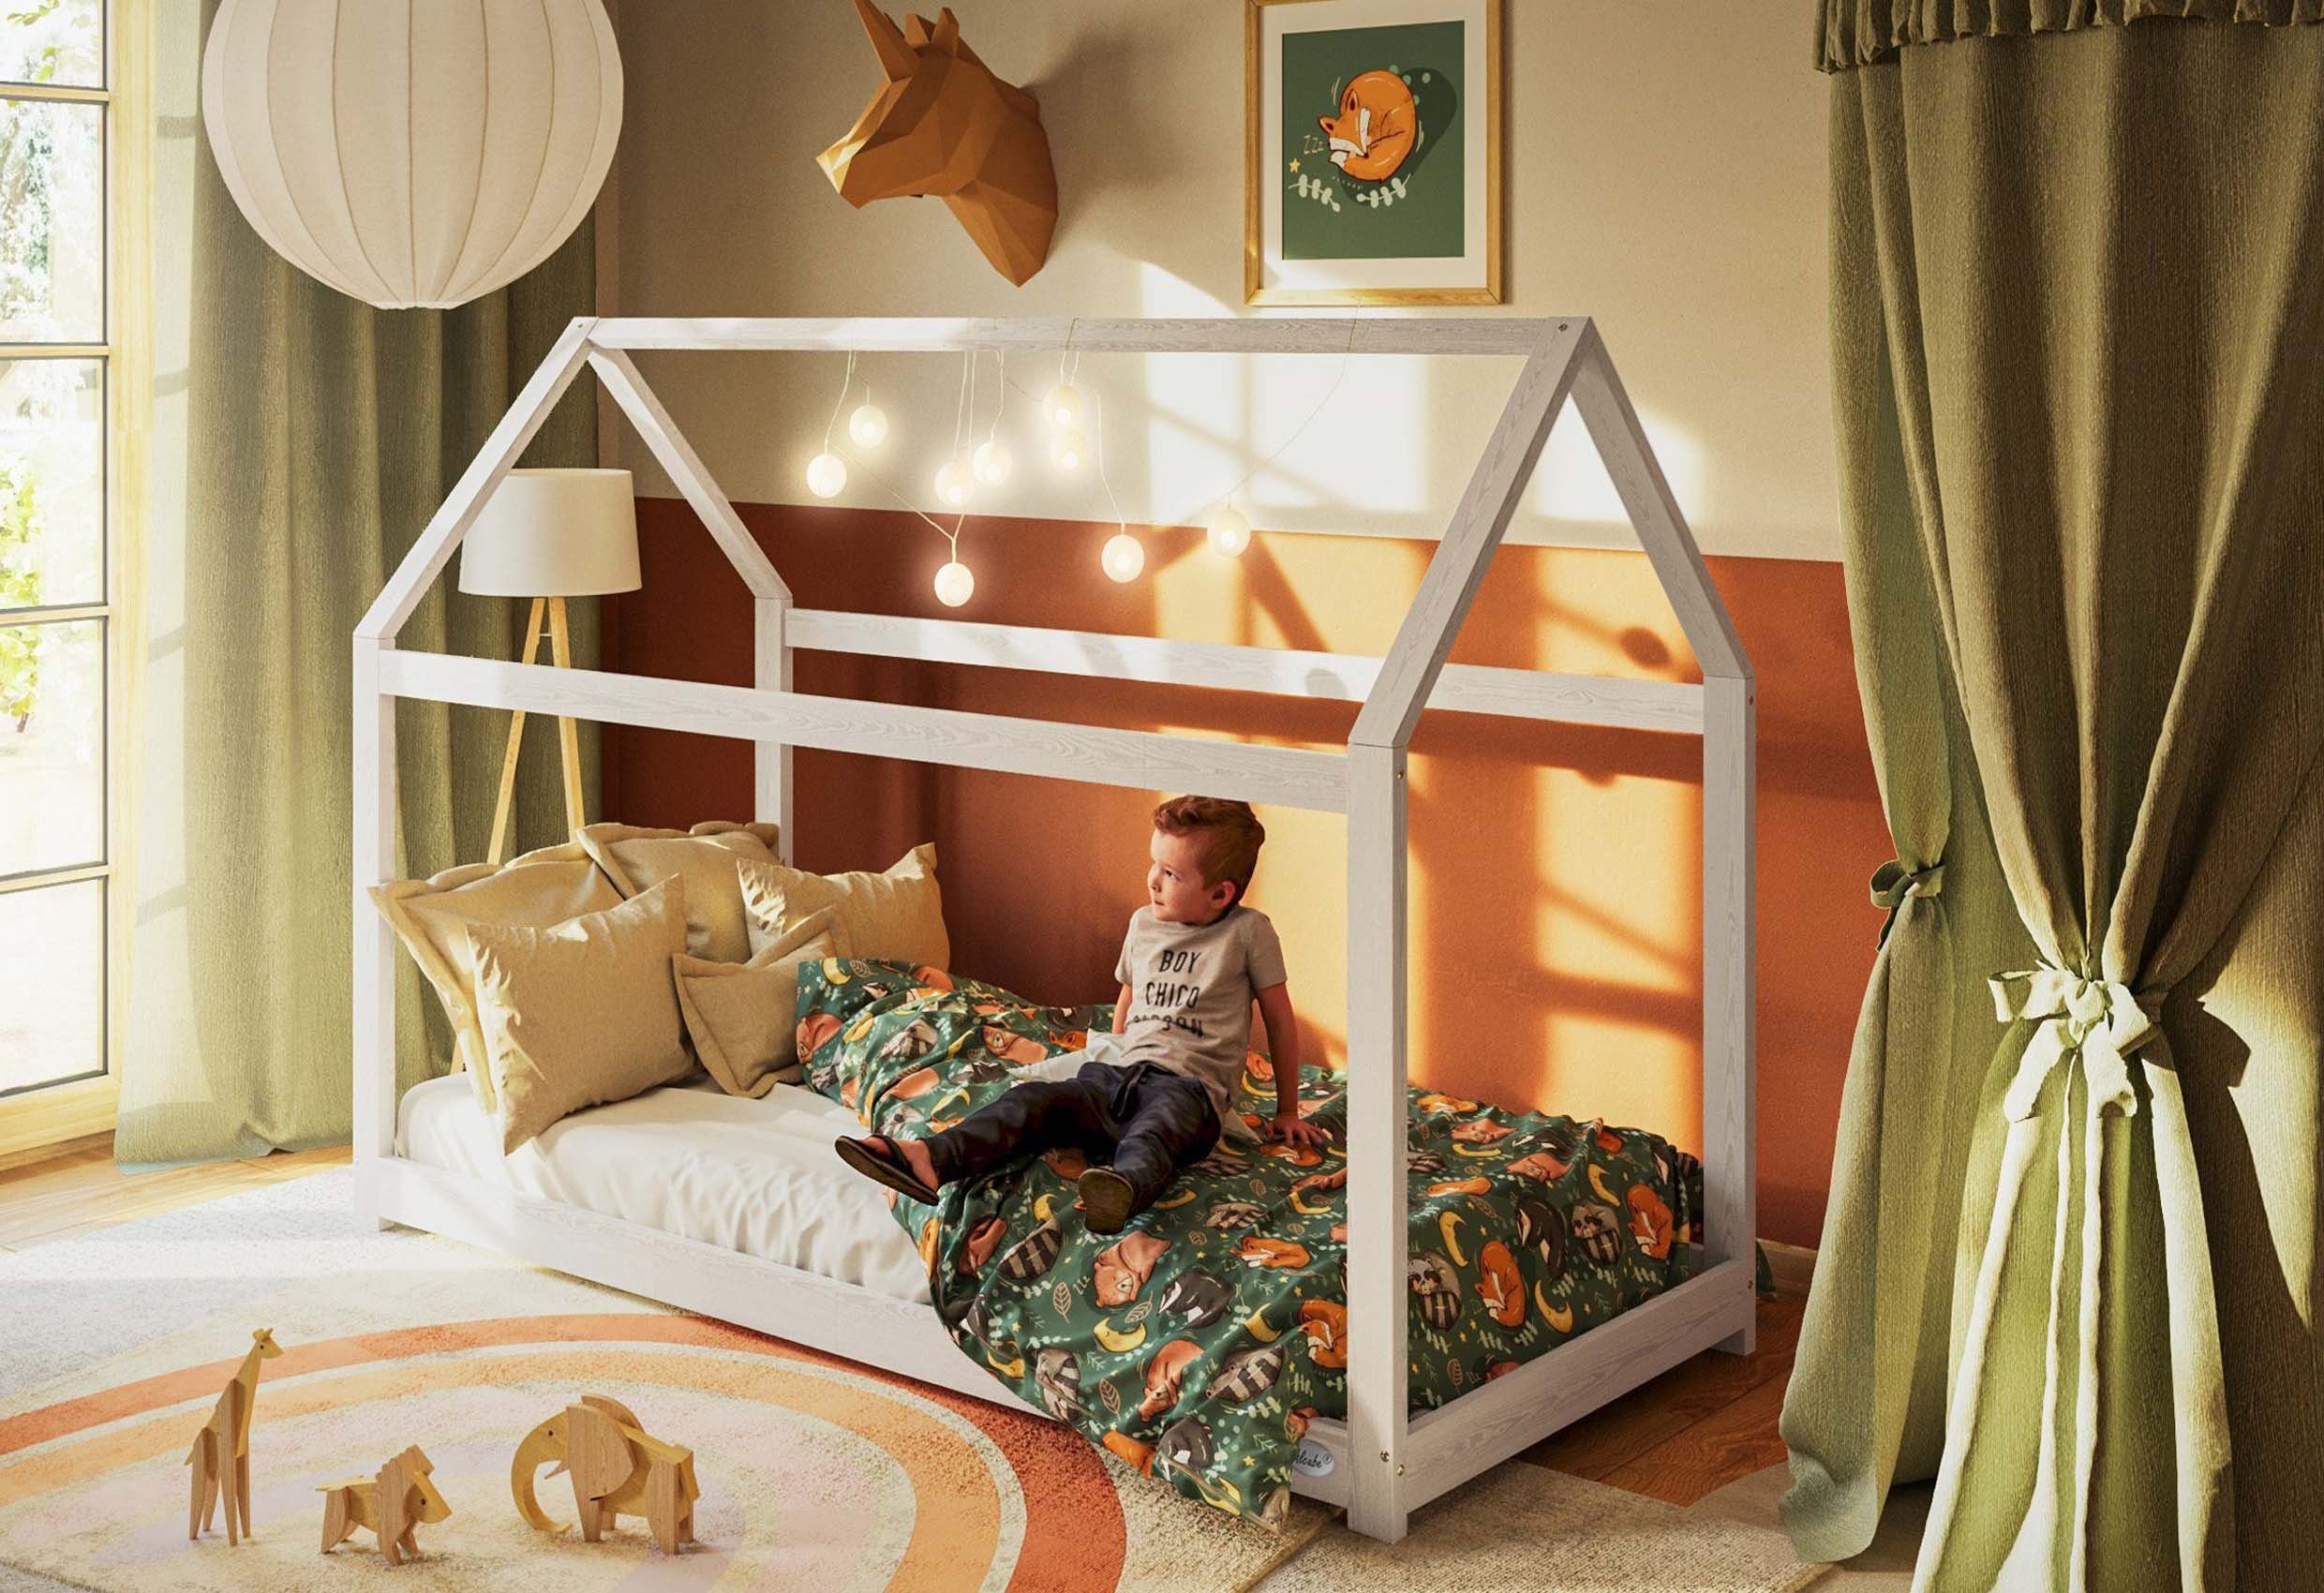 Alcube Hausbett HOLMI, Kinderbett 80x160 cm Montessori Stil, Jugendbett  bodentief Kiefernholz, Hausbett für Jungen und Mädchen, aus Massivholz -  Bett in Weiß